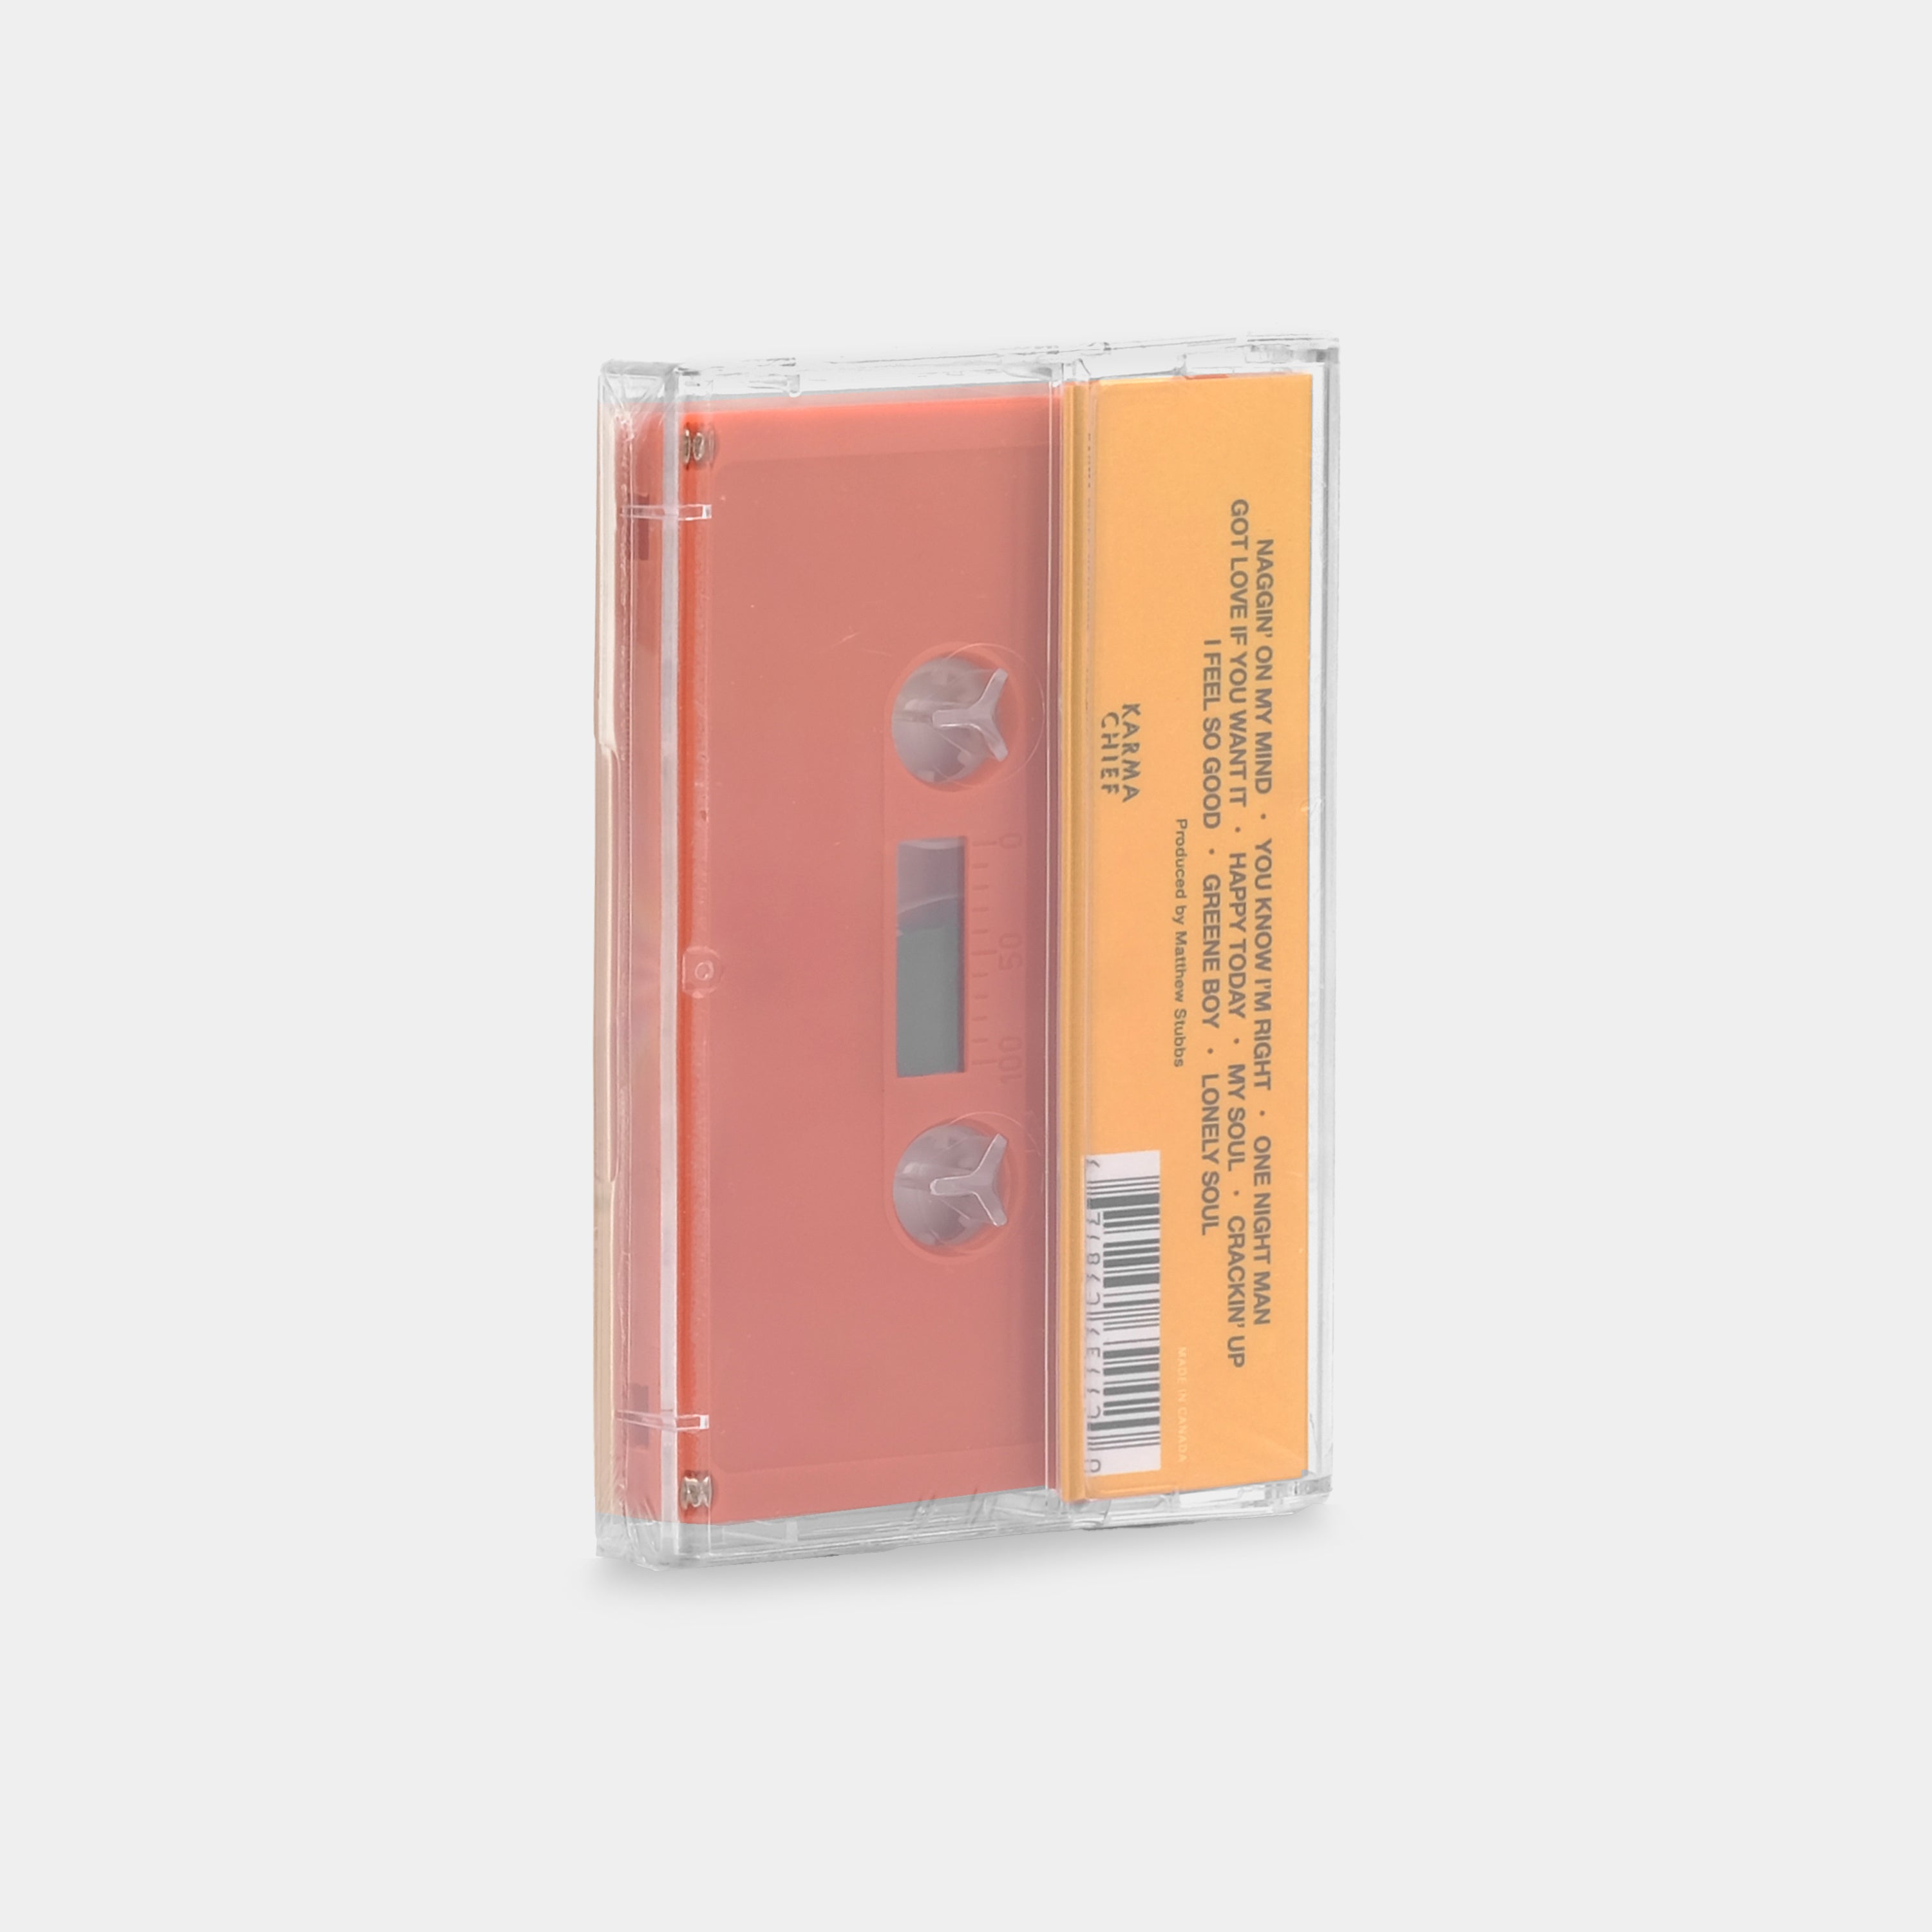 GA-20 - Lonely Soul Cassette Tape